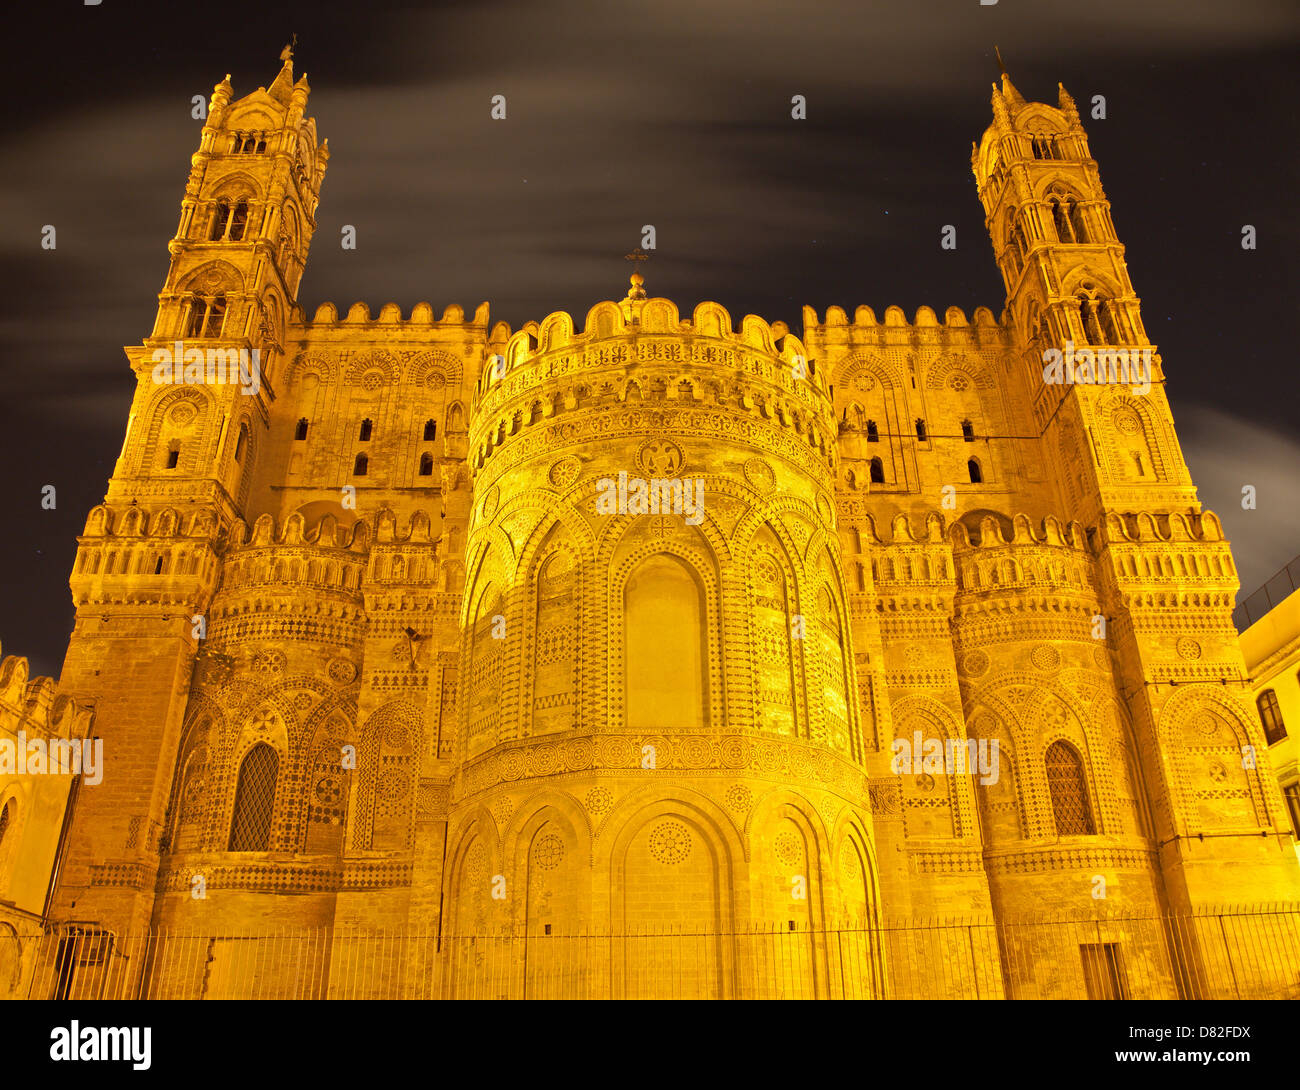 Palermo - Heiligtum der Kathedrale oder Duomo im gotisch-katalanischen Stil in der Nacht Stockfoto